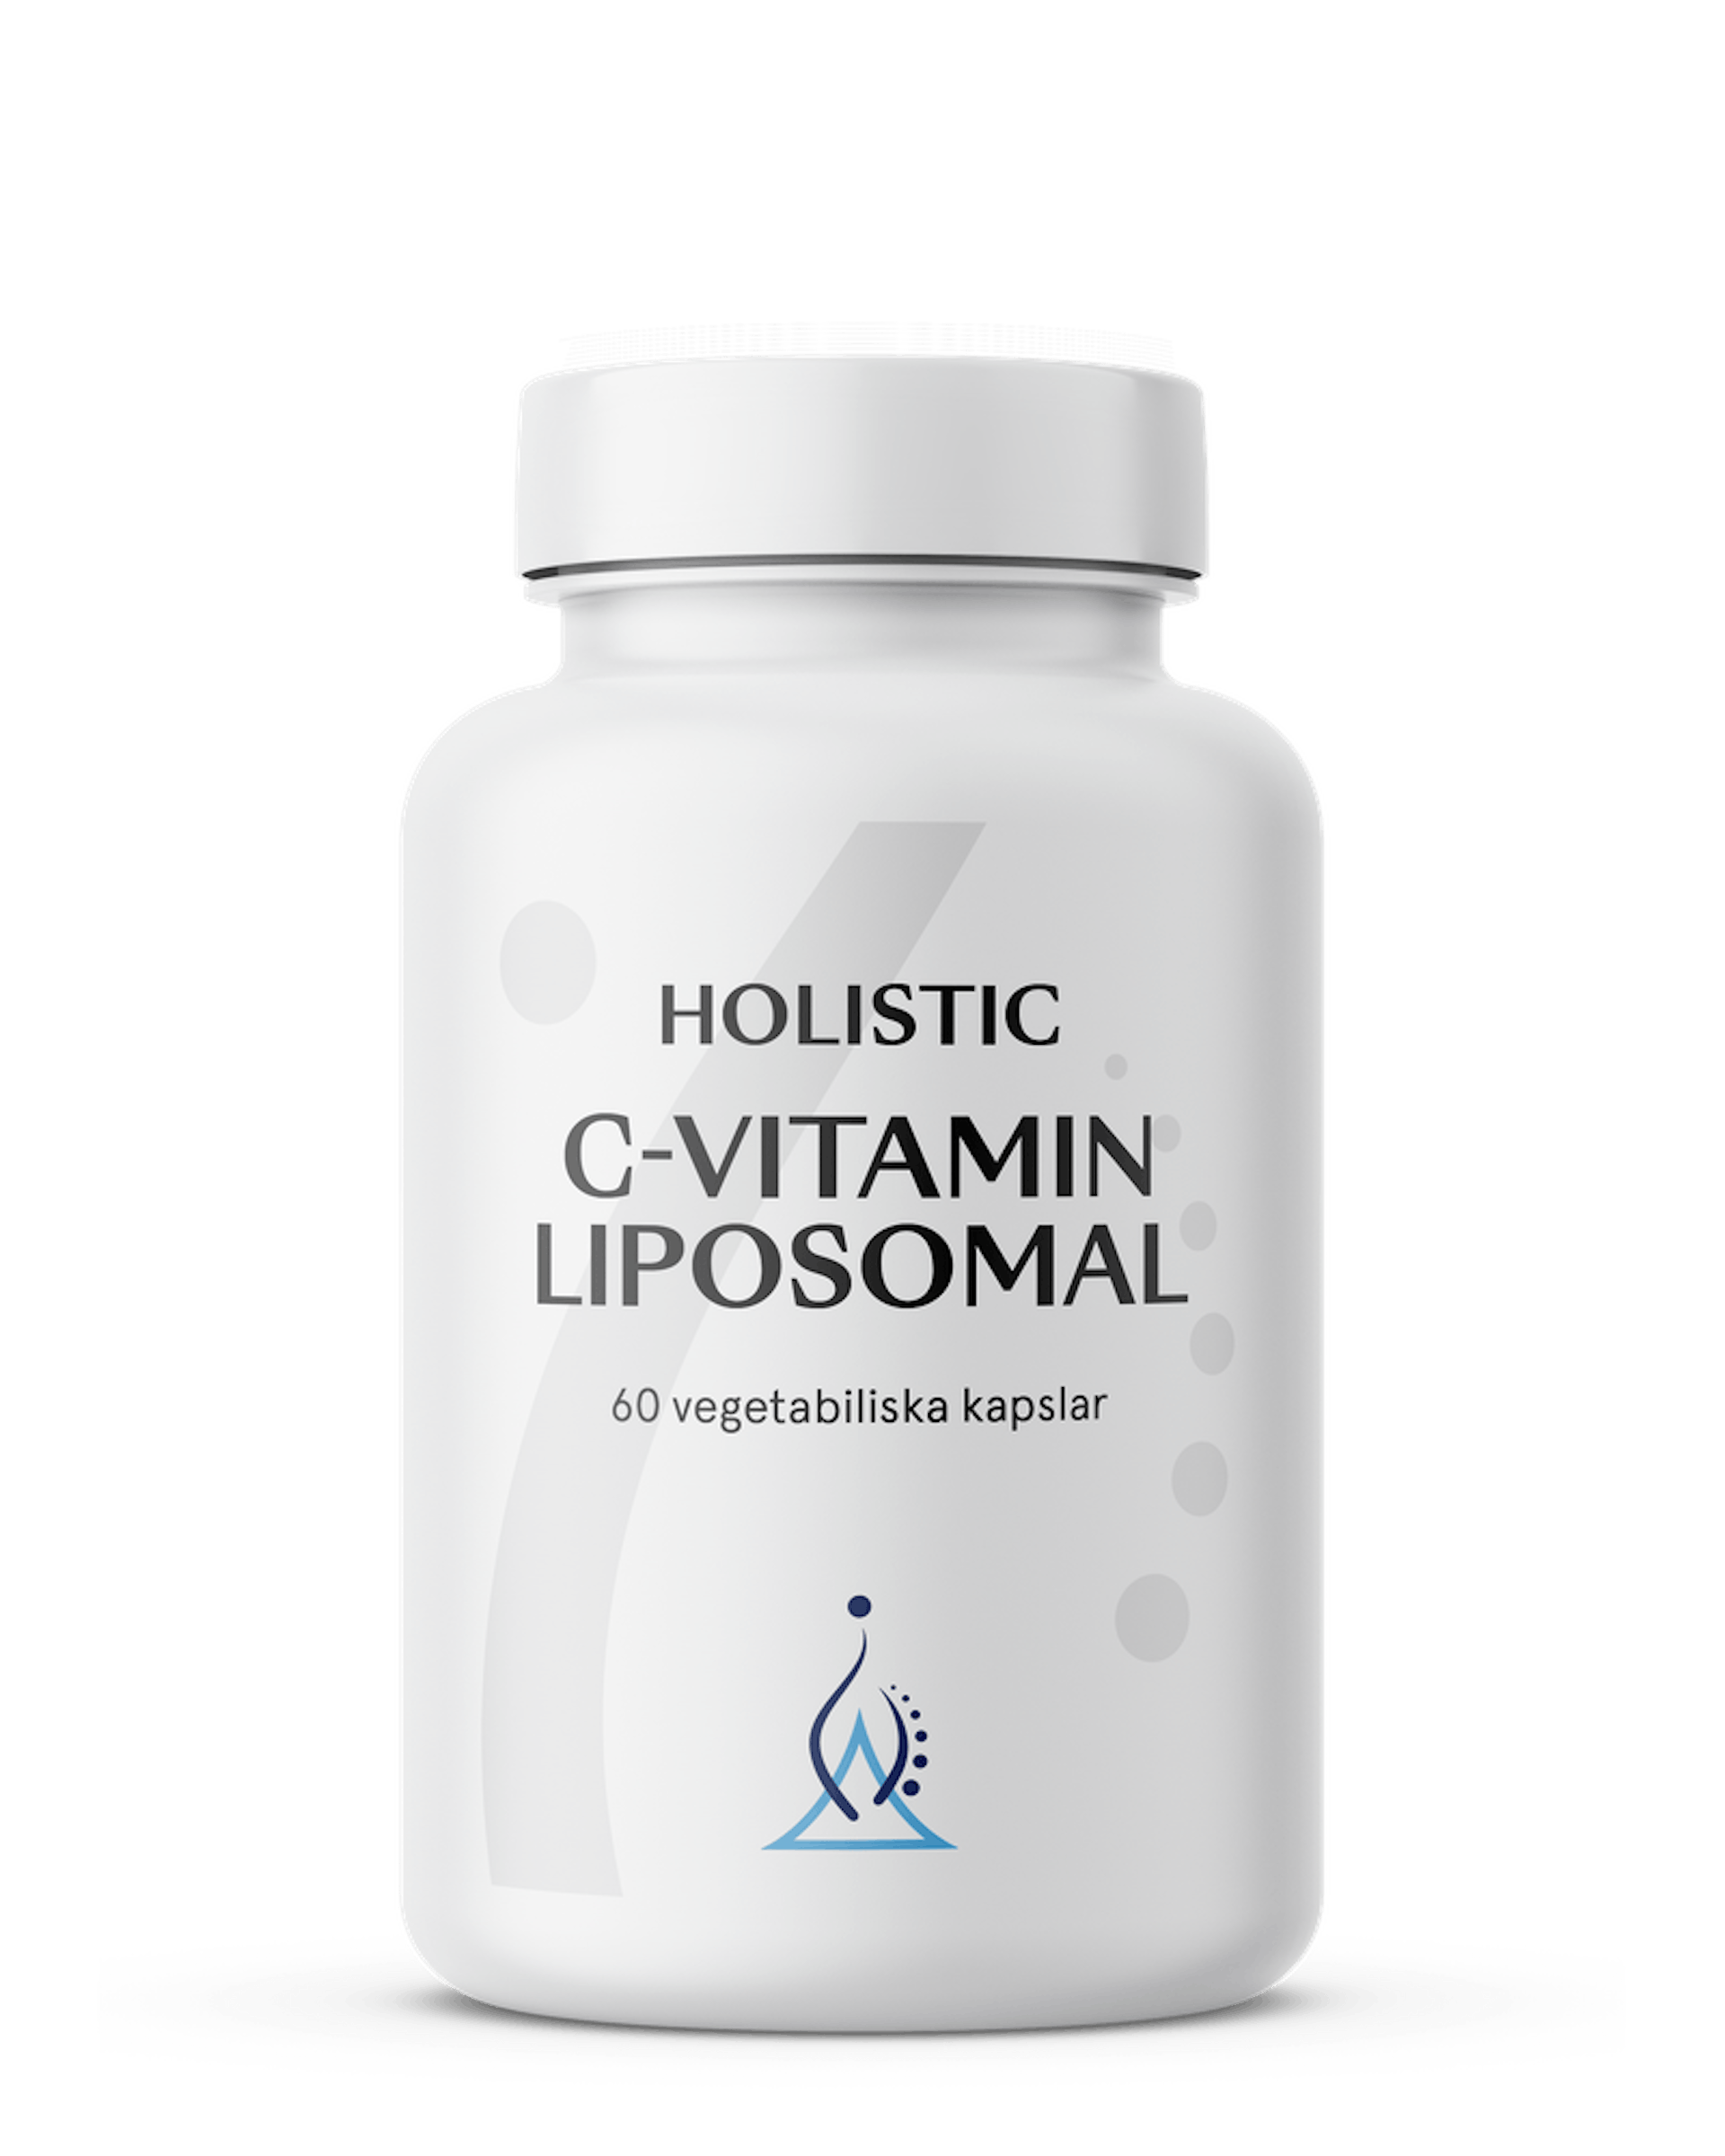 C-vitamin liposomal, 60 kapslar (1 av 1)